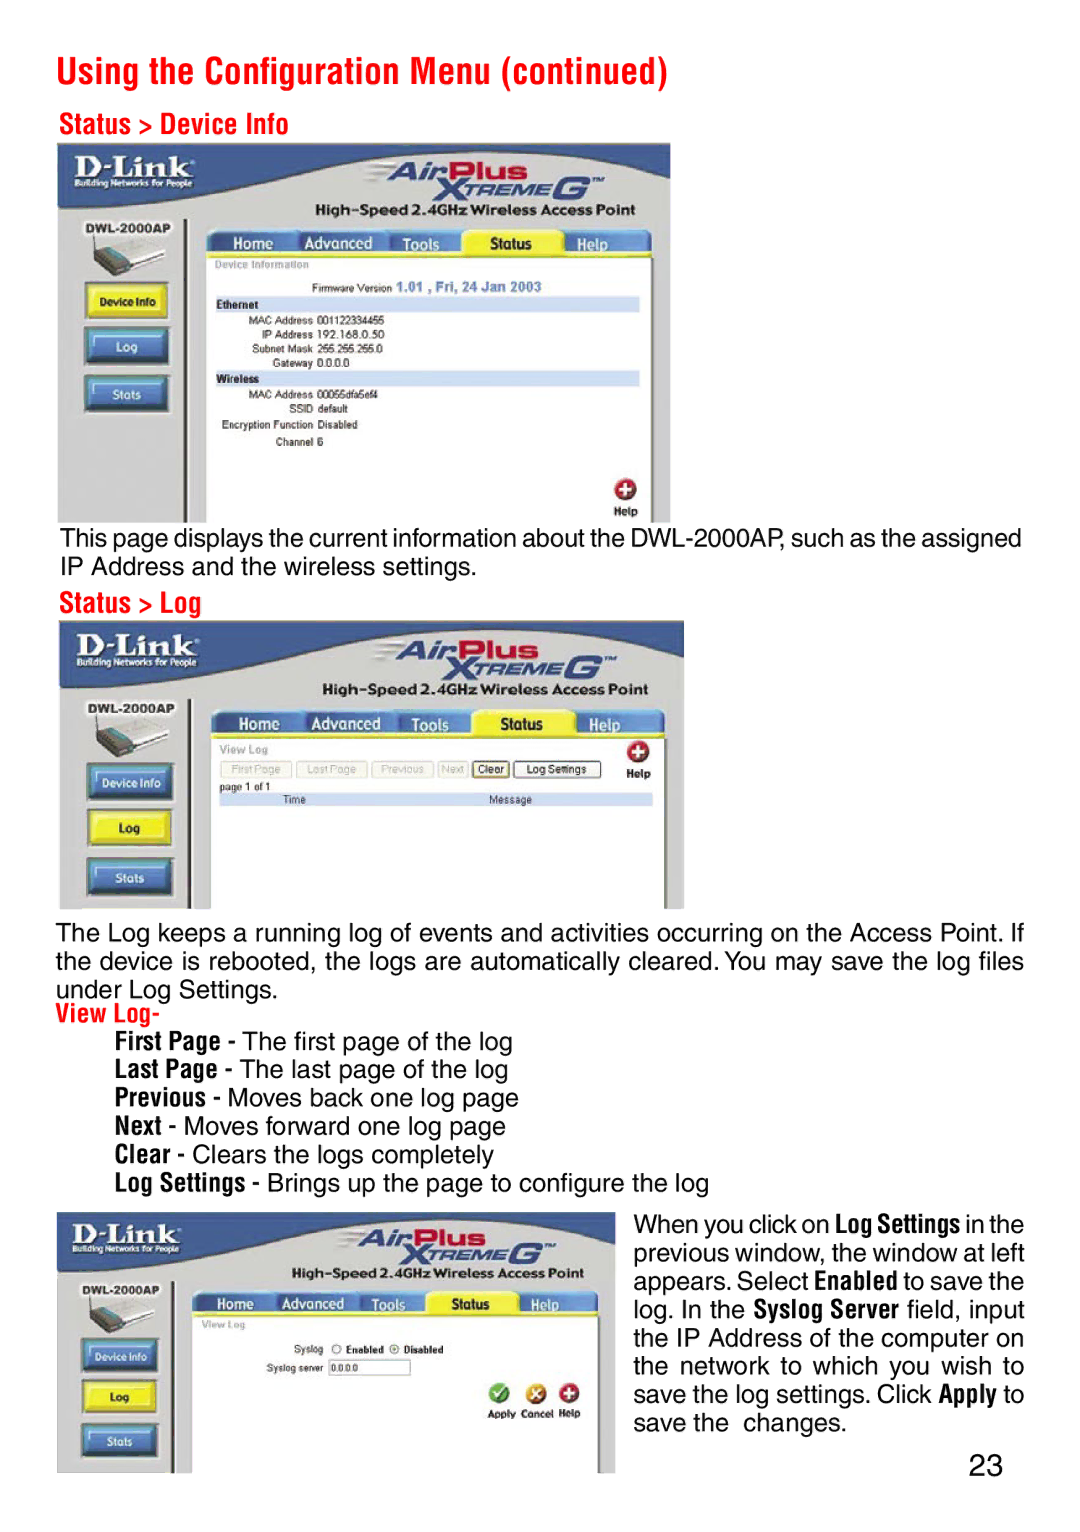 D-Link DWL-2000AP manual Status Device Info, Status Log 